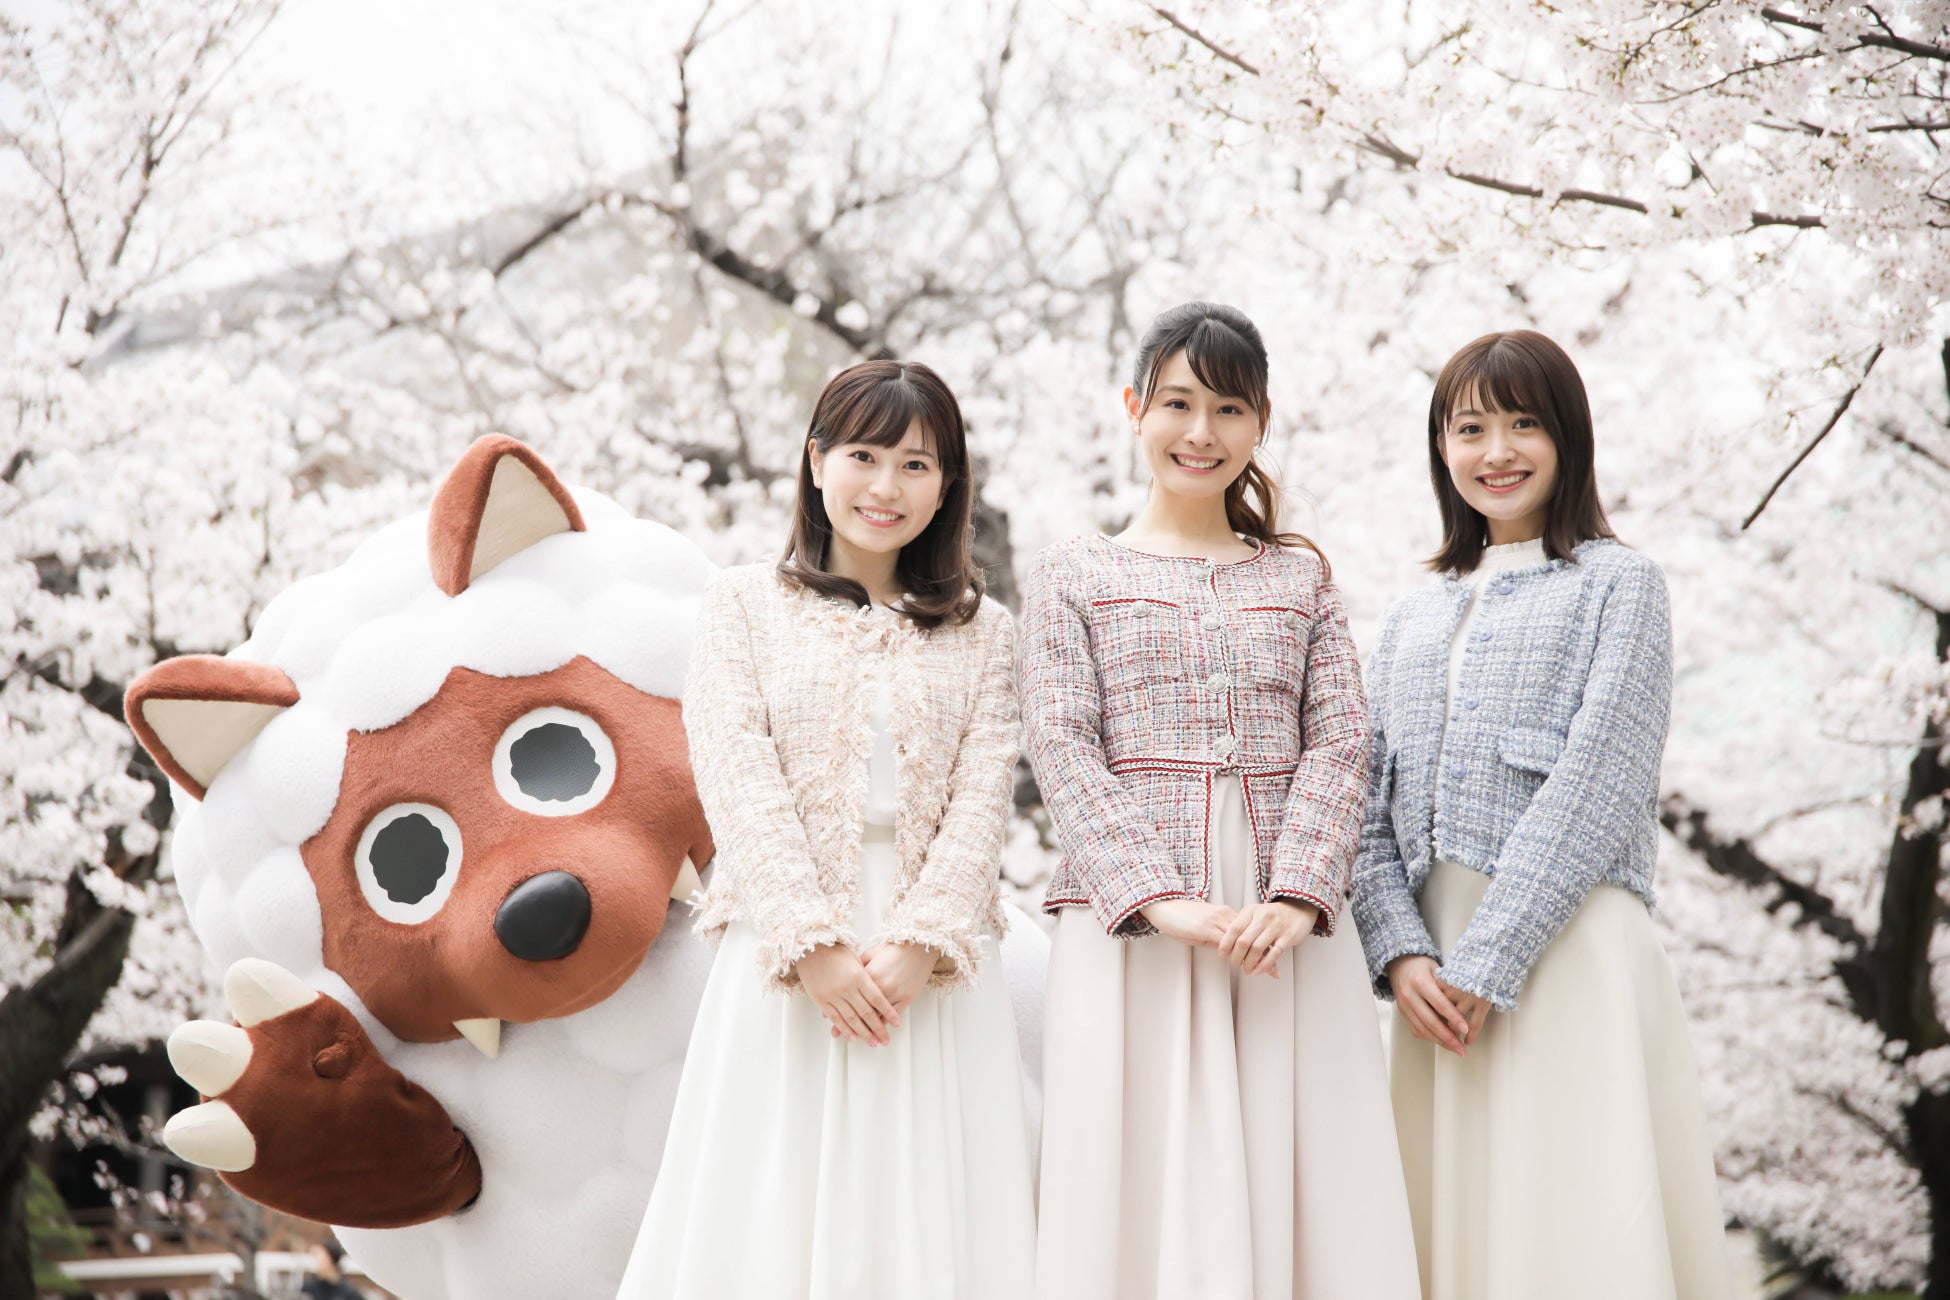 左から、ウルフィ、松崎杏香アナ、望木聡子アナ、尾形杏奈アナ